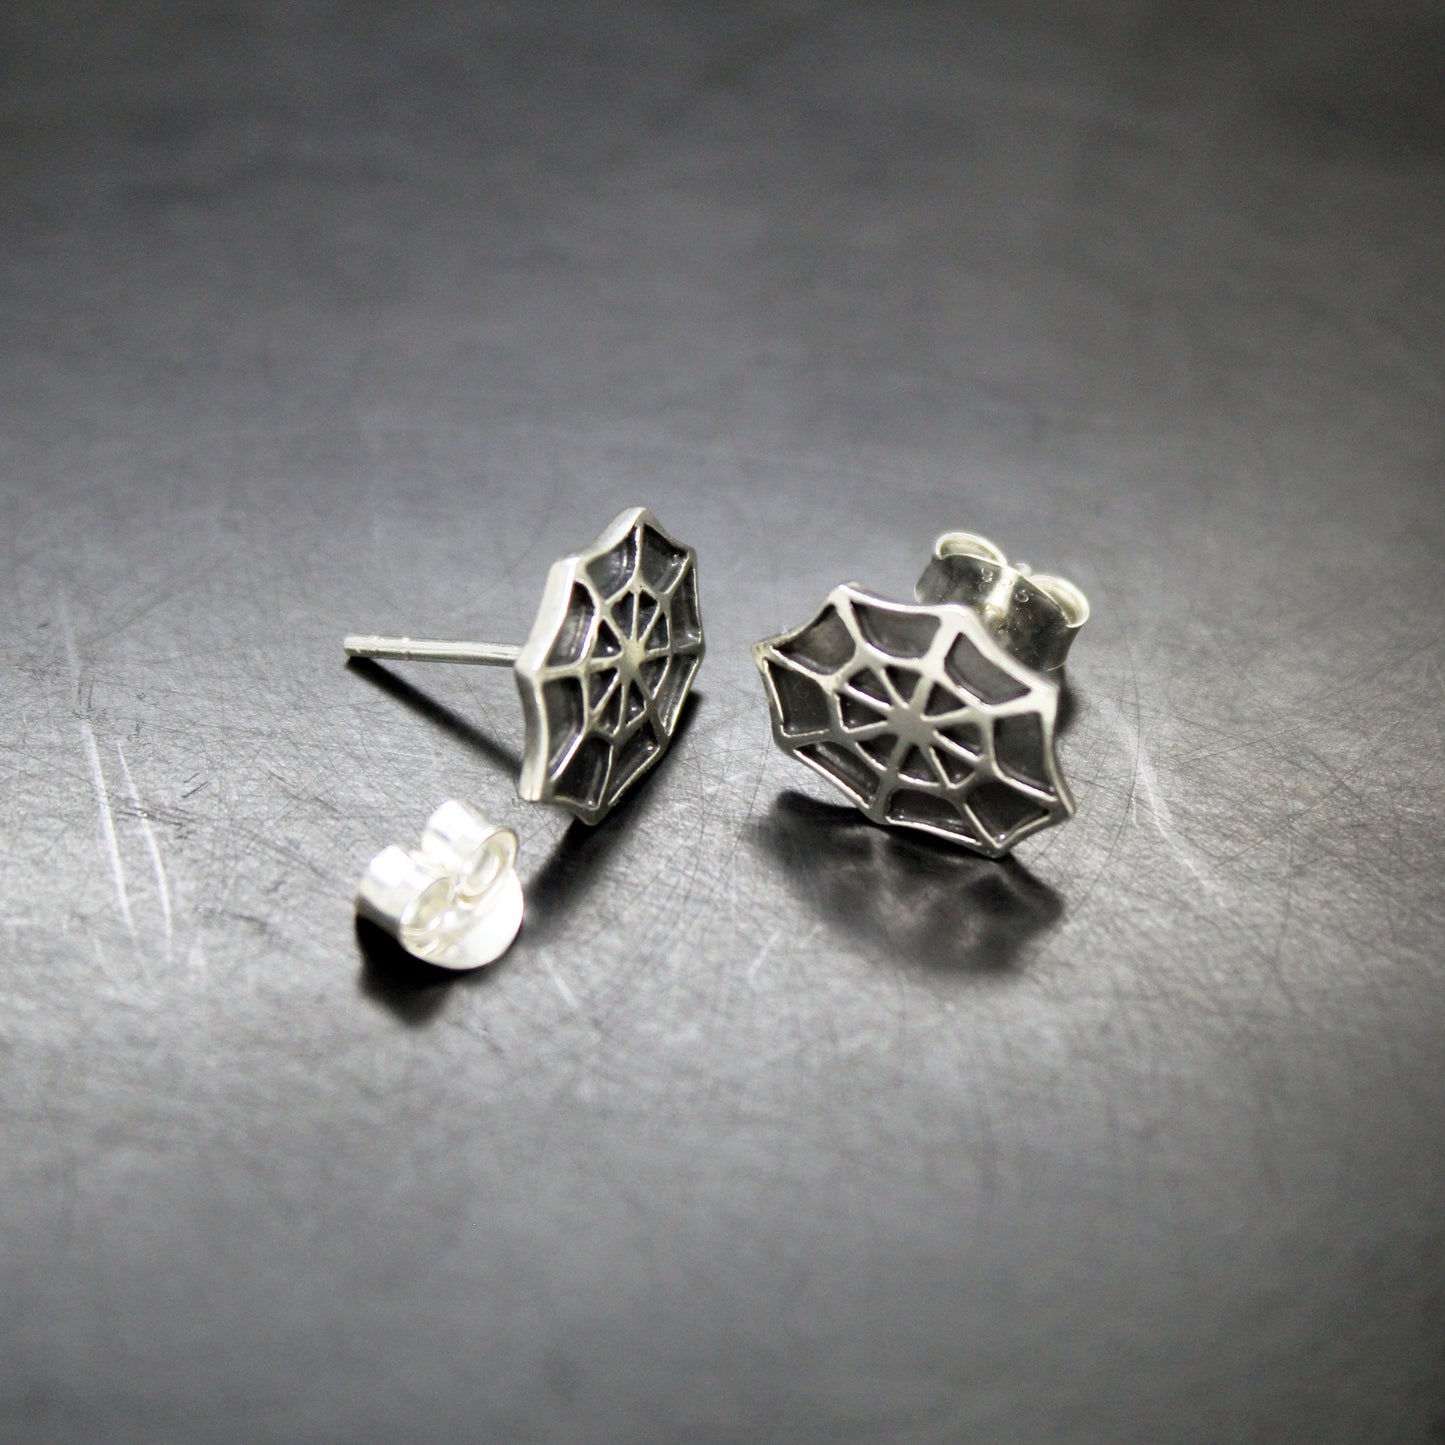 Cobweb earrings in 925 silver